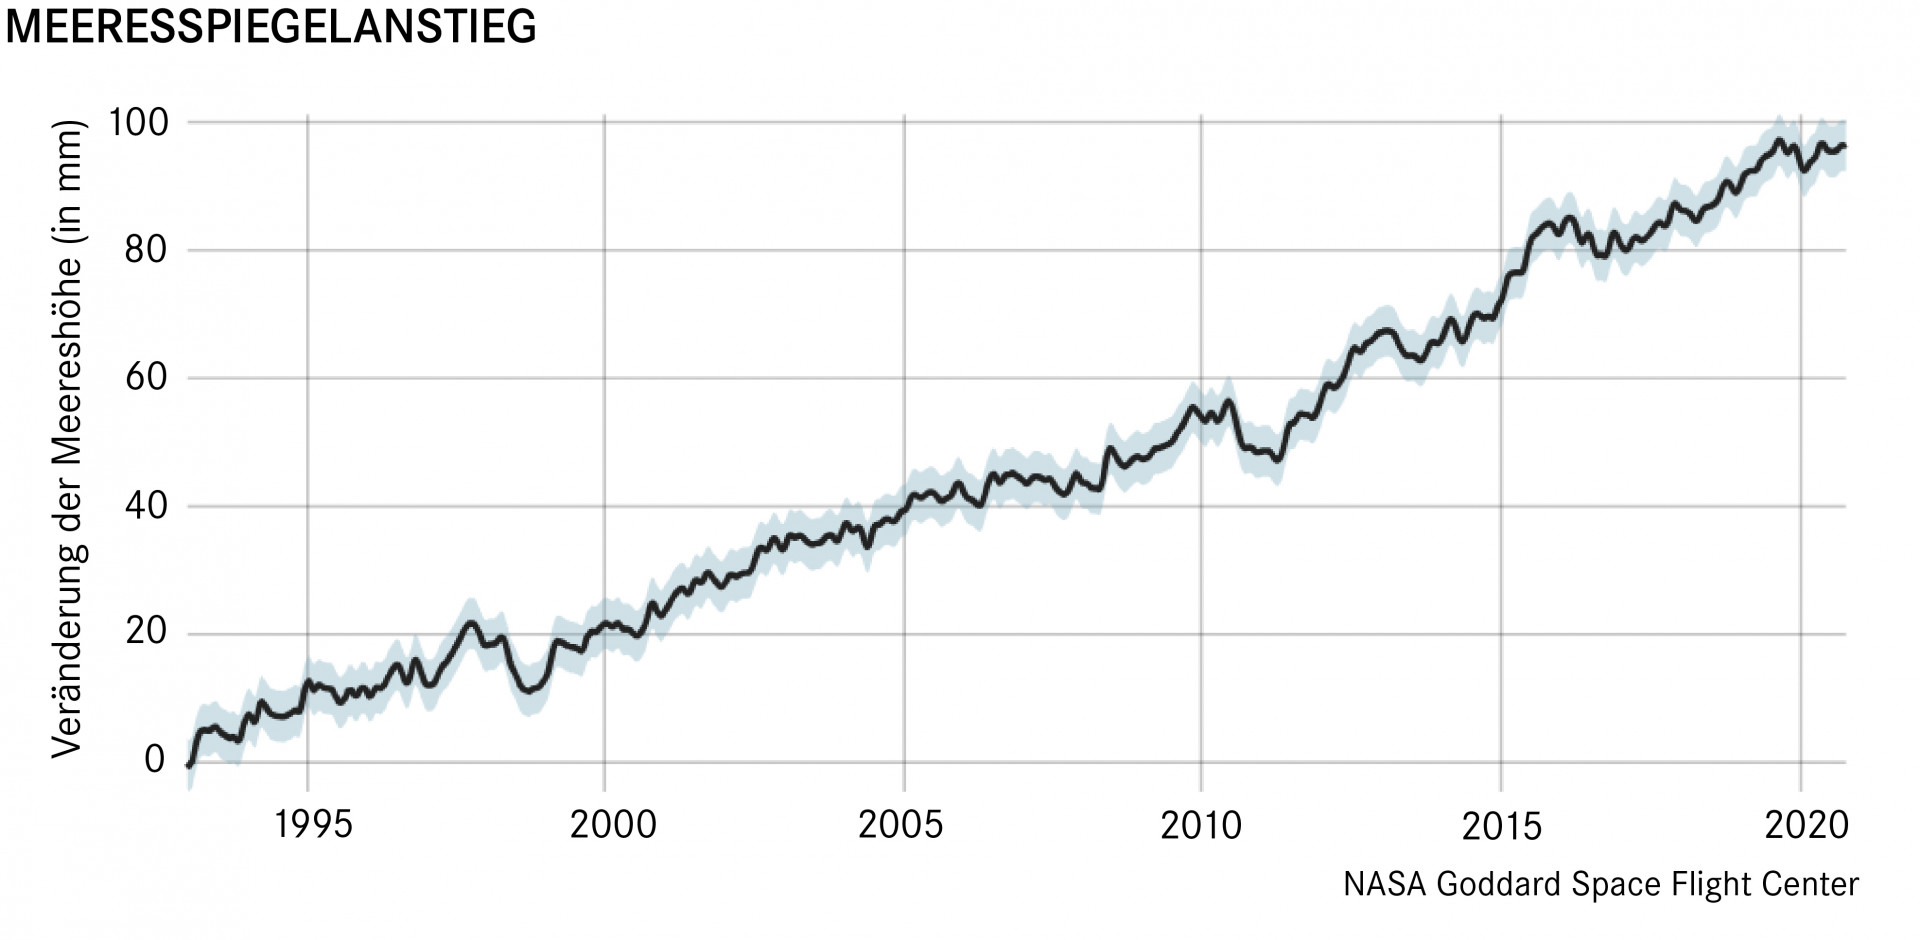 Die Kurve zeigt einen kontinuierlichen Anstieg des Meeresspiegels seit 1995 um 93 mm